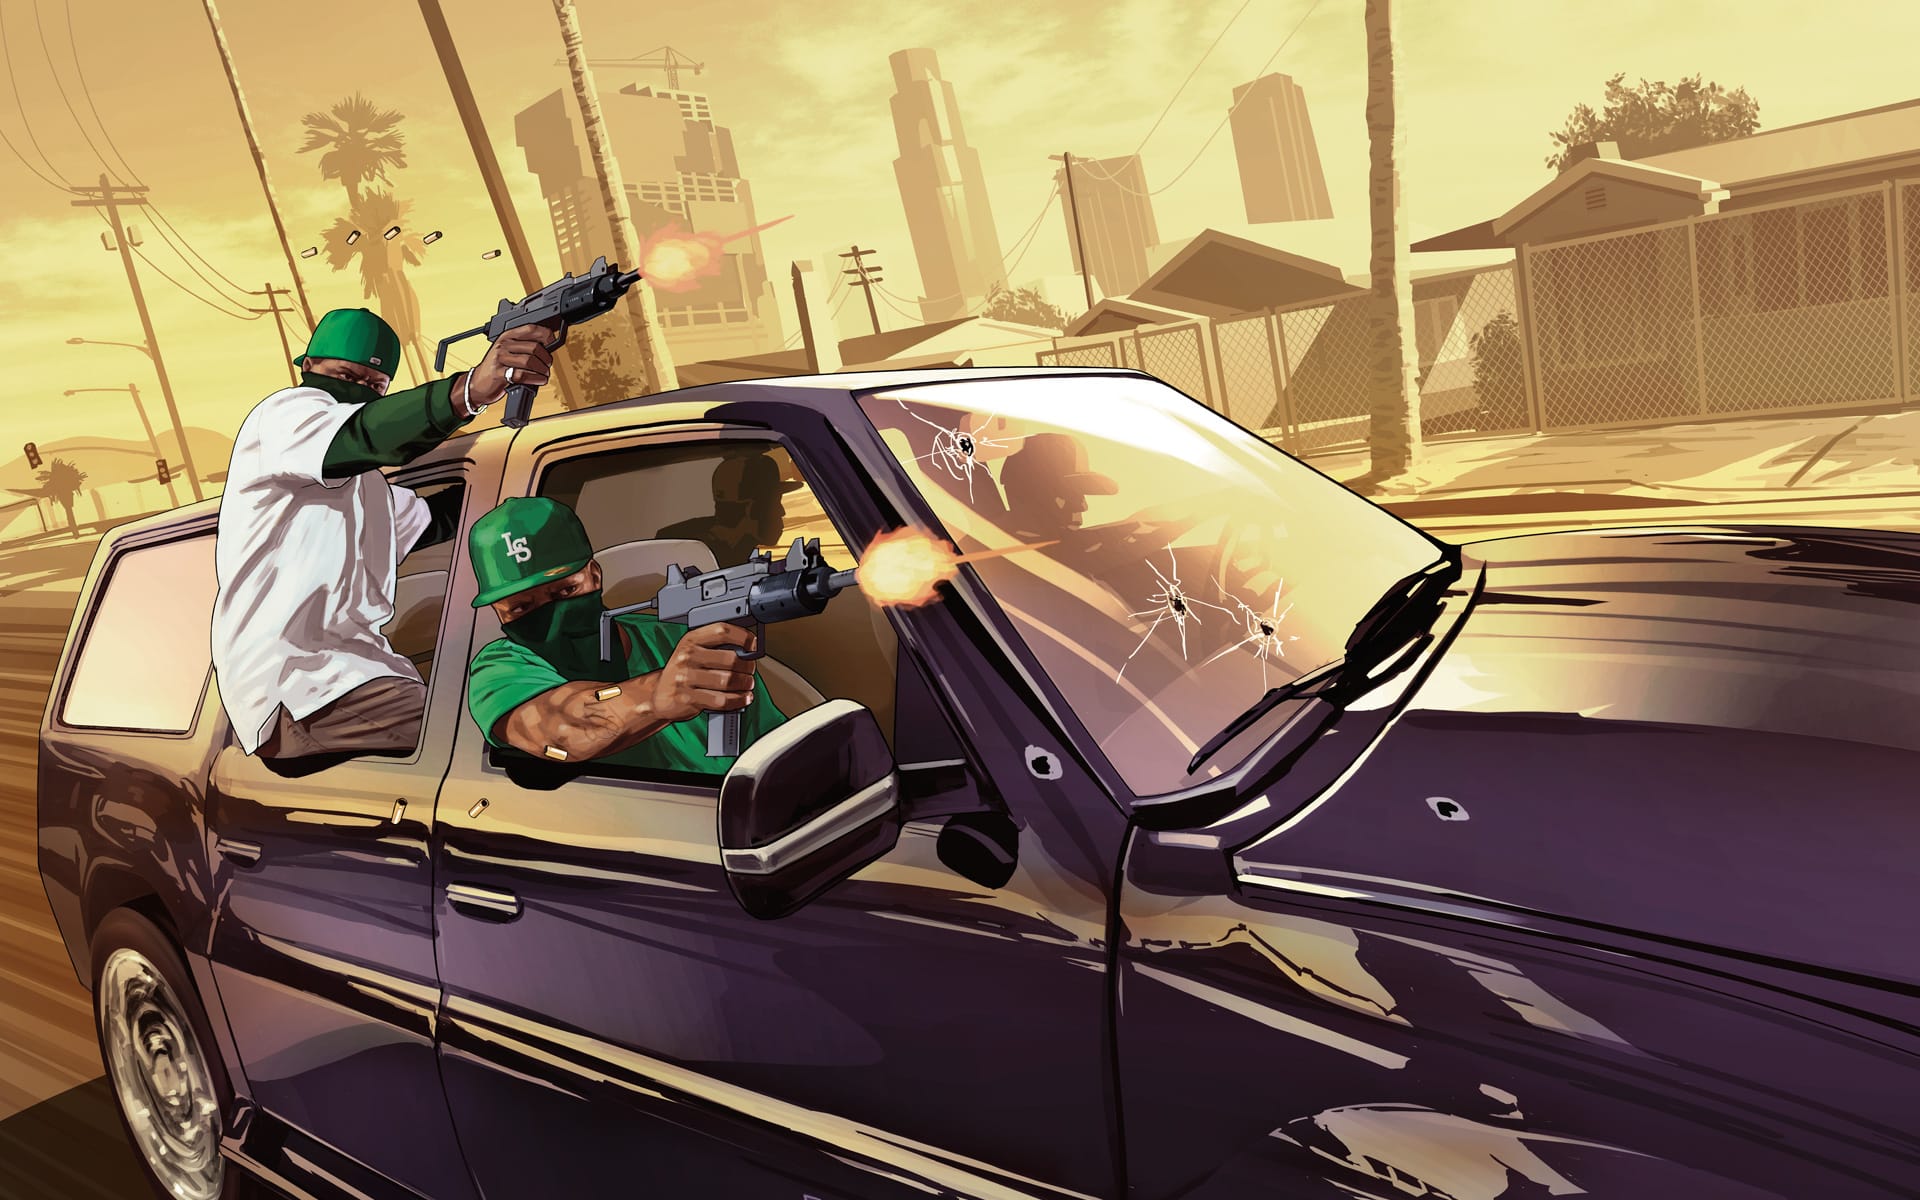 GTA V é terceiro jogo da história a vender mais de 100 milhões de cópias